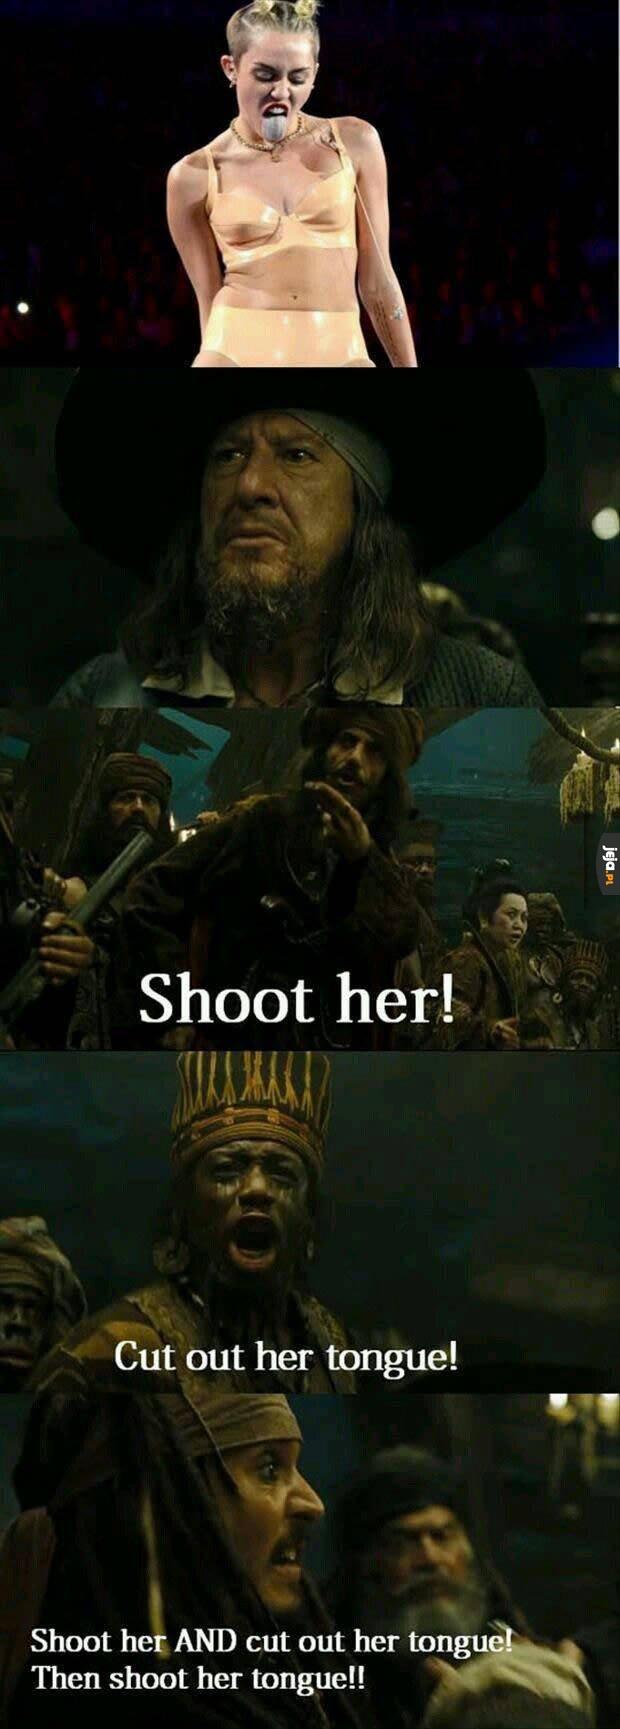 Zastrzelić ją!